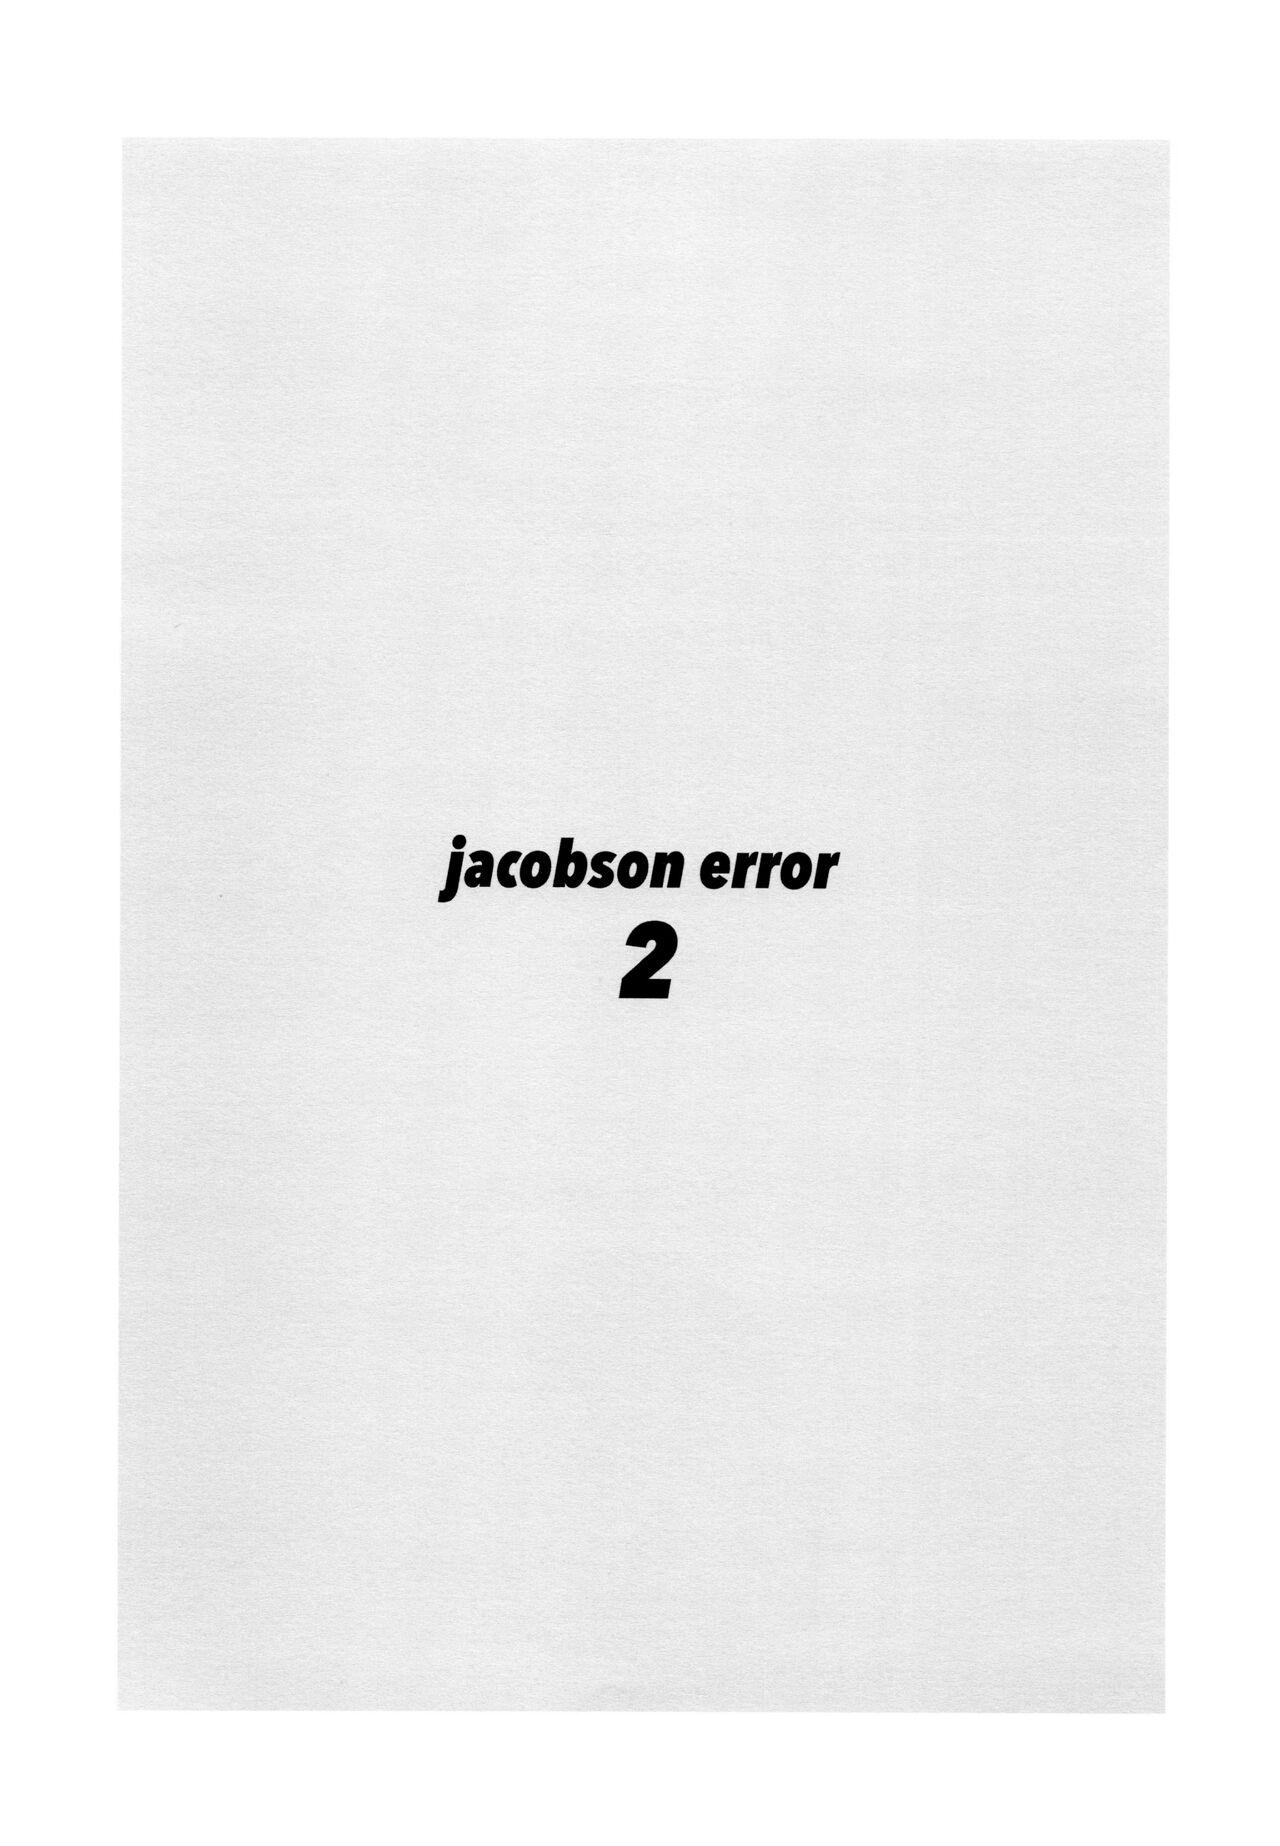 Caseiro jacobson error2 - Osomatsu san Perrito - Picture 3